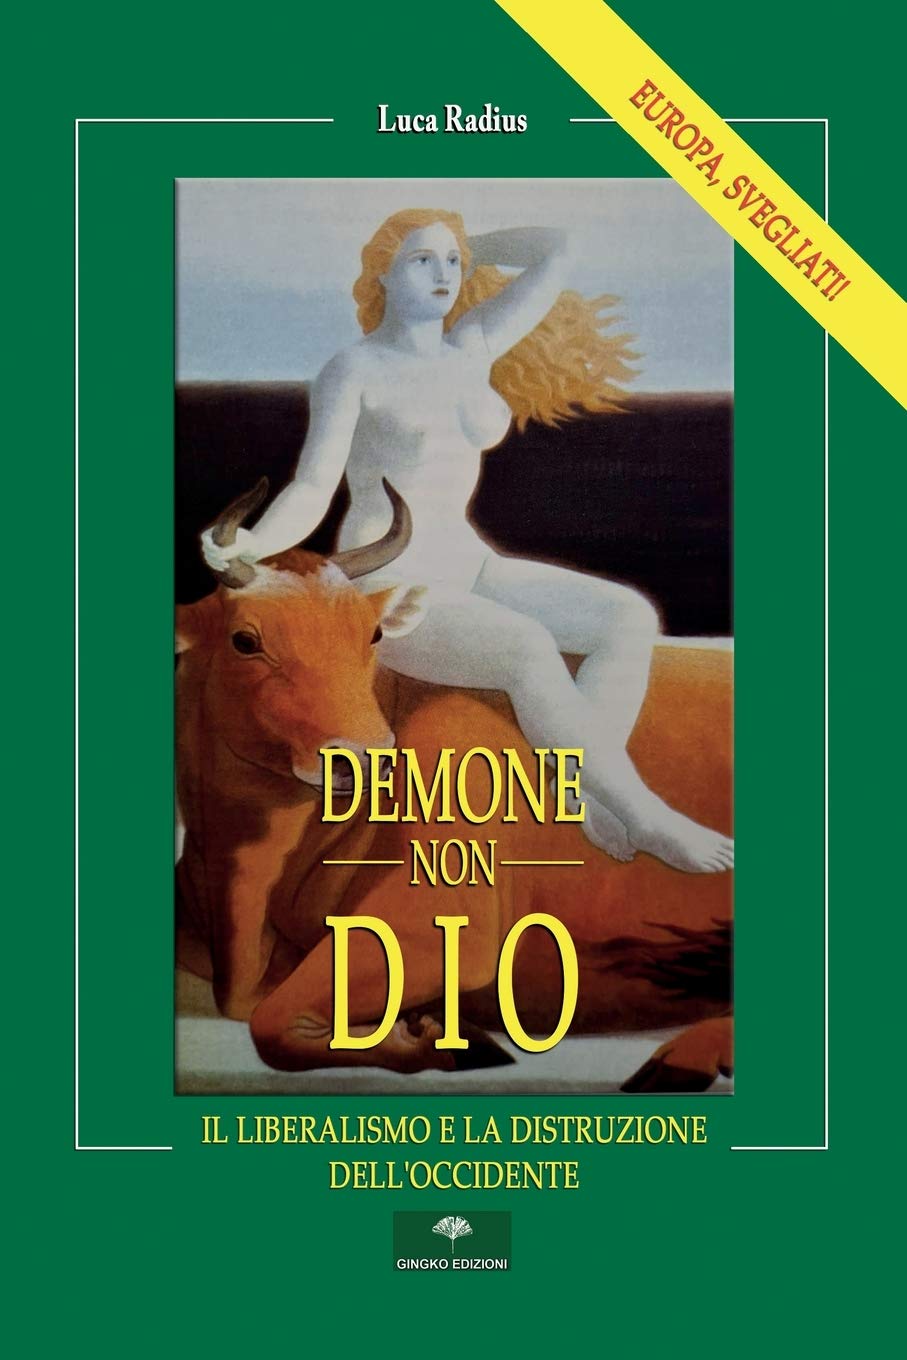 Prima che Amazon se ne accorga: “Demone non Dio” di Luca Radius!